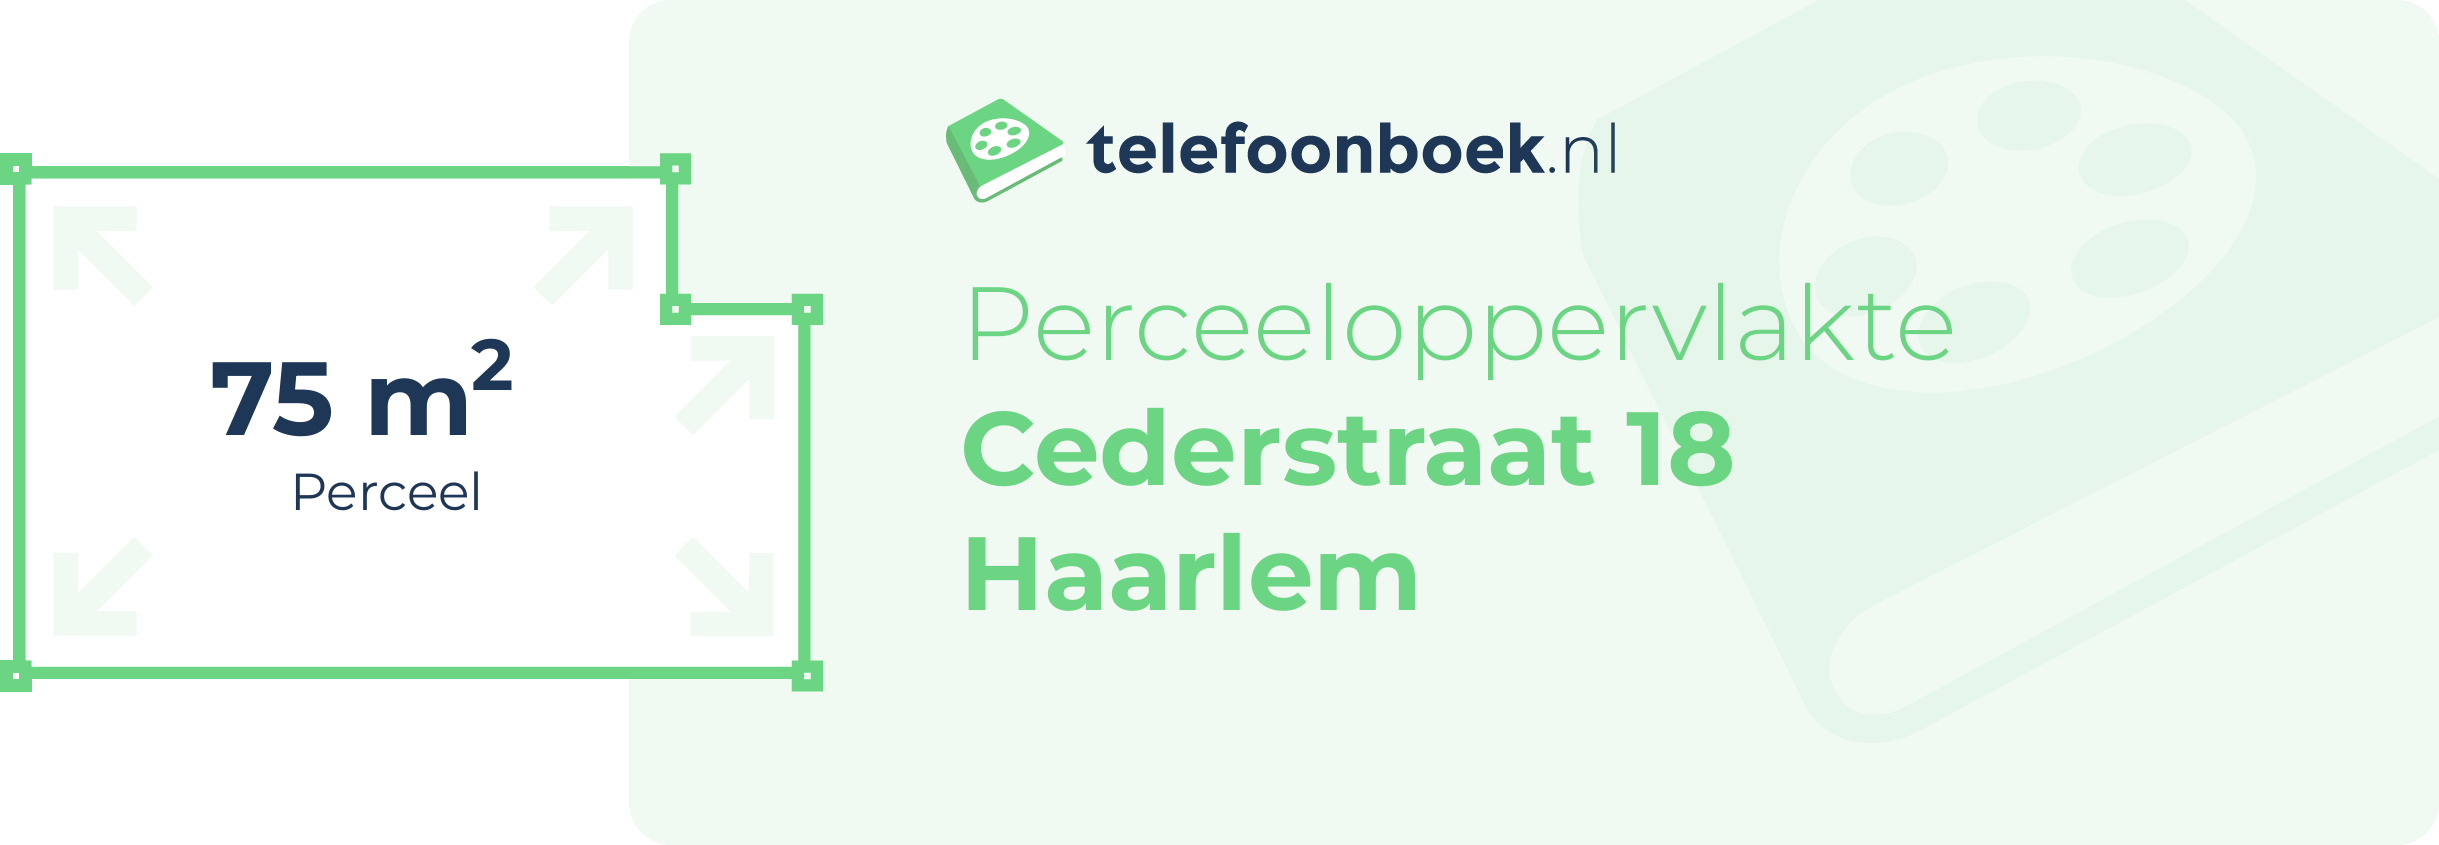 Perceeloppervlakte Cederstraat 18 Haarlem